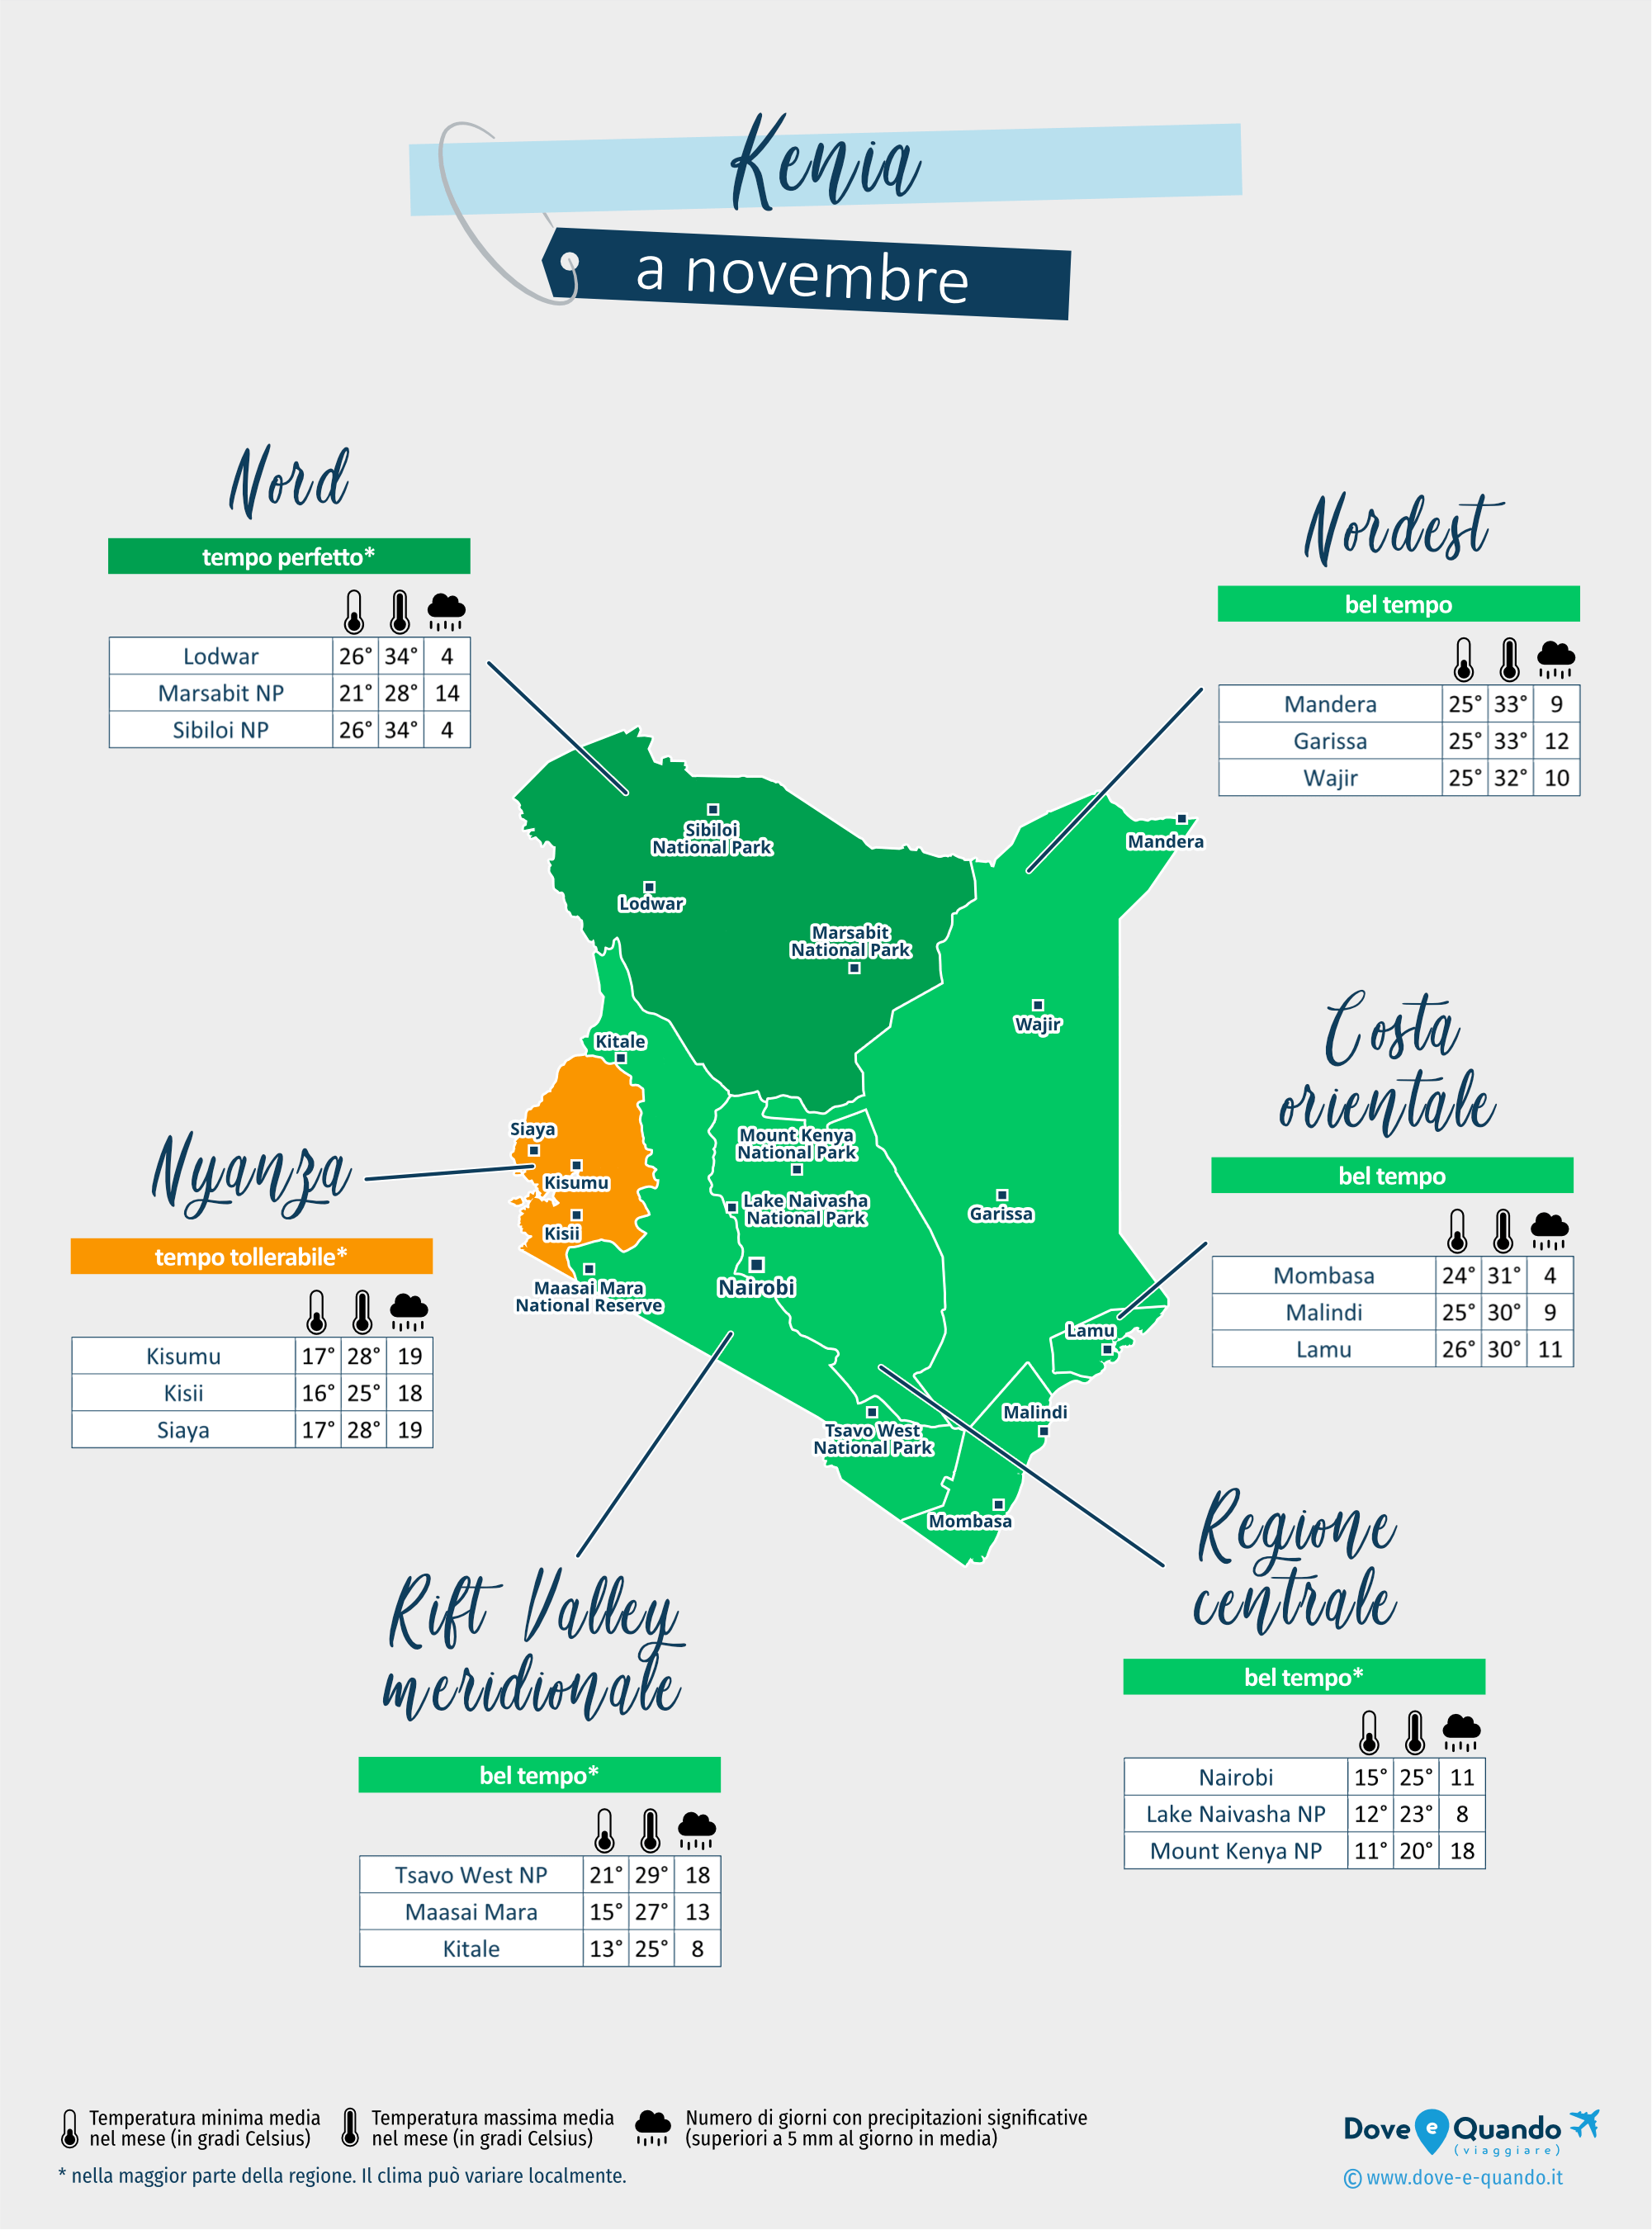 Kenia: mappa del meteo a novembre nelle diverse regioni